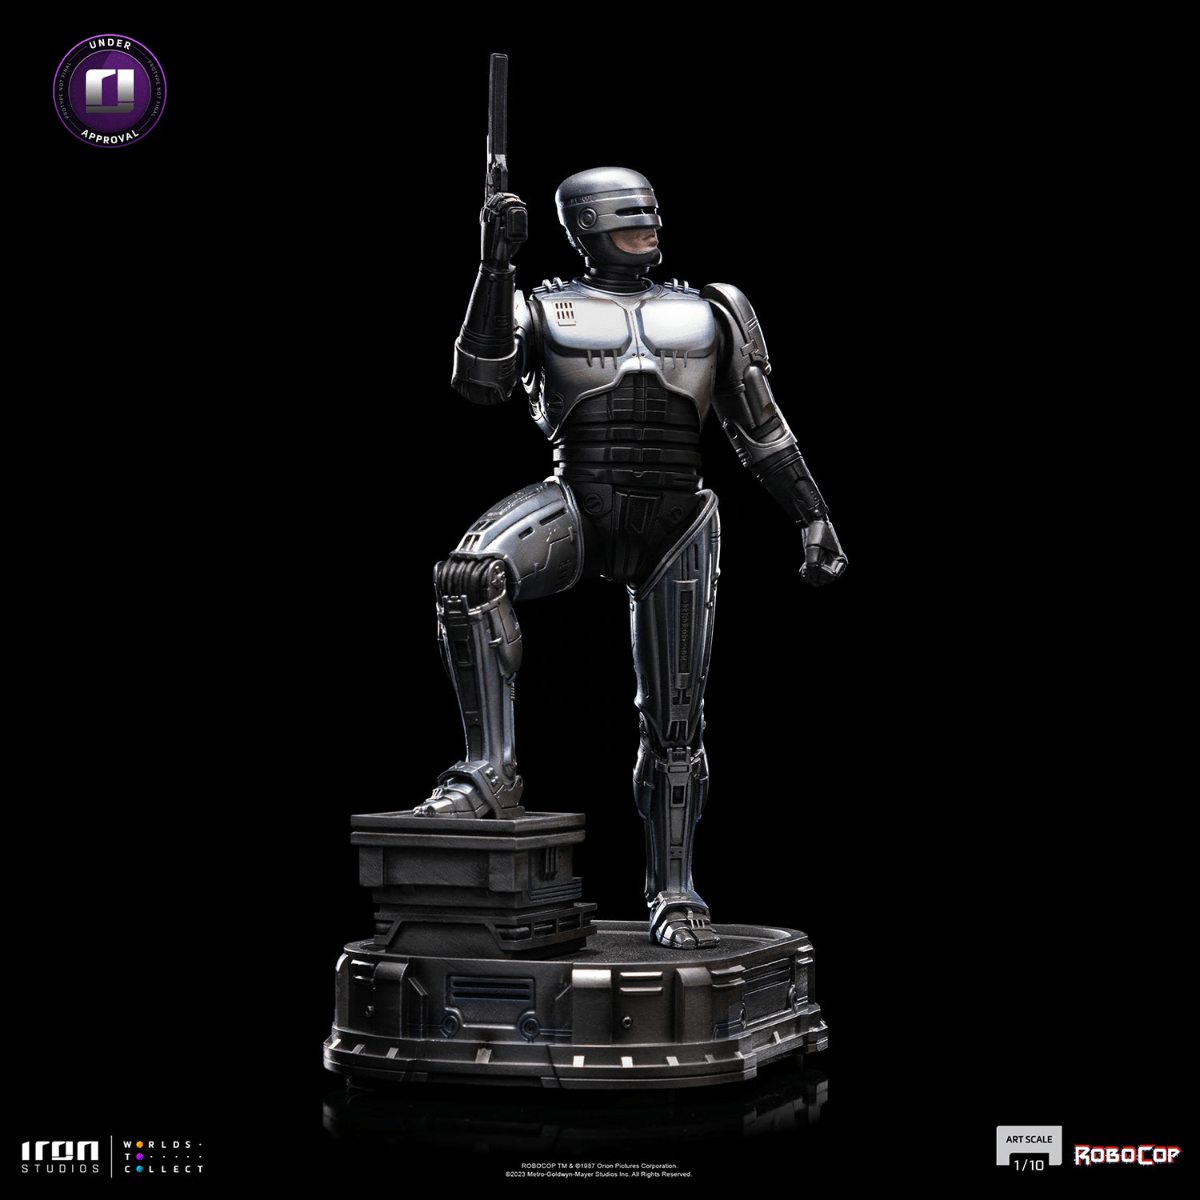 IRO54018 RoboCop - RoboCop 1:10 Scale Statue - Iron Studios - Titan Pop Culture